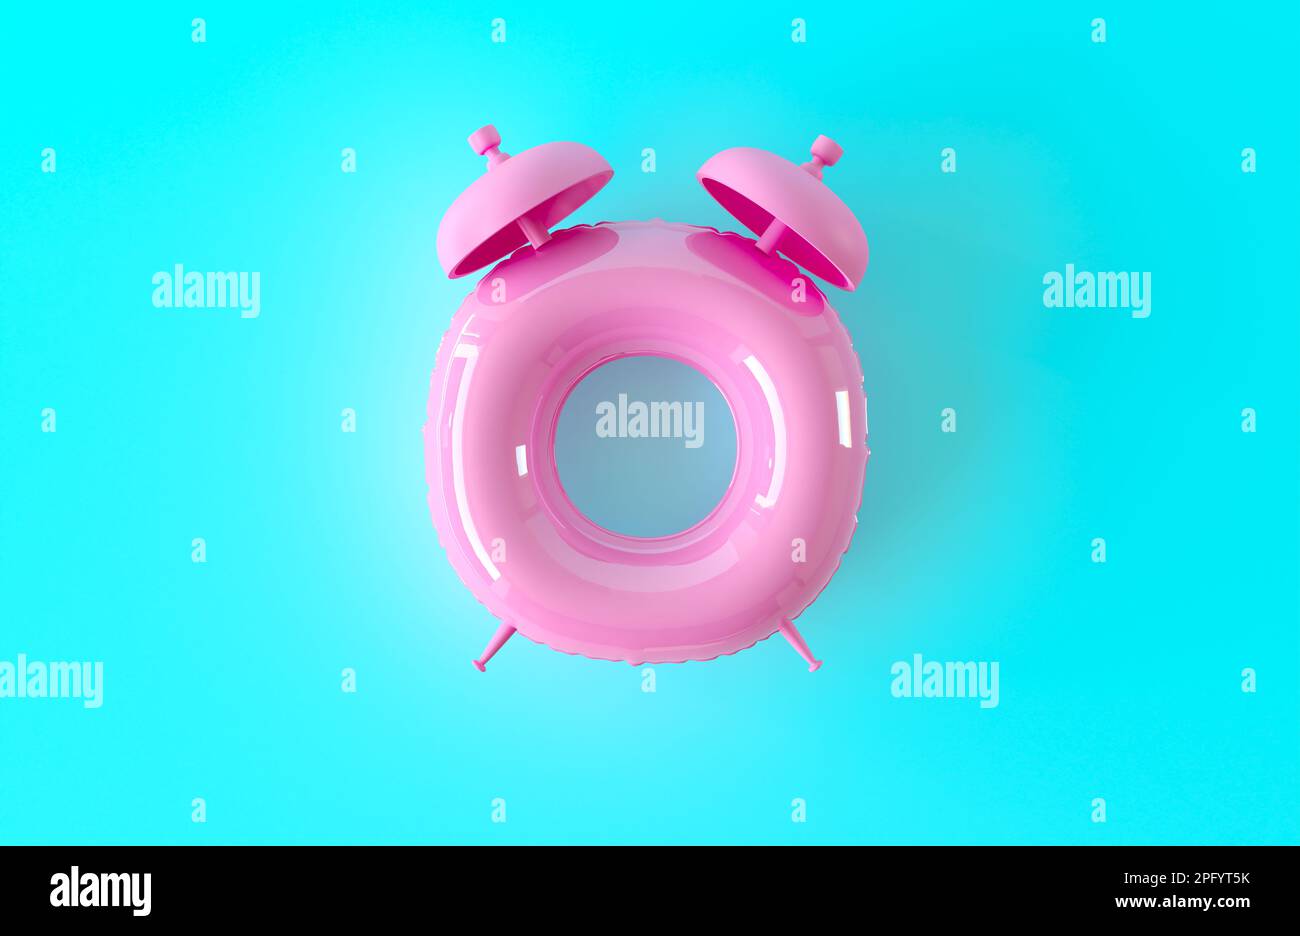 Uhr Ring Draufsicht auf blauem Hintergrund. Wecker - rosa aufblasbarer Kreis. Sommerzeitkonzept. Strandurlaub, Sommerspaß, kreative Idee. 3D-Rendern Stockfoto